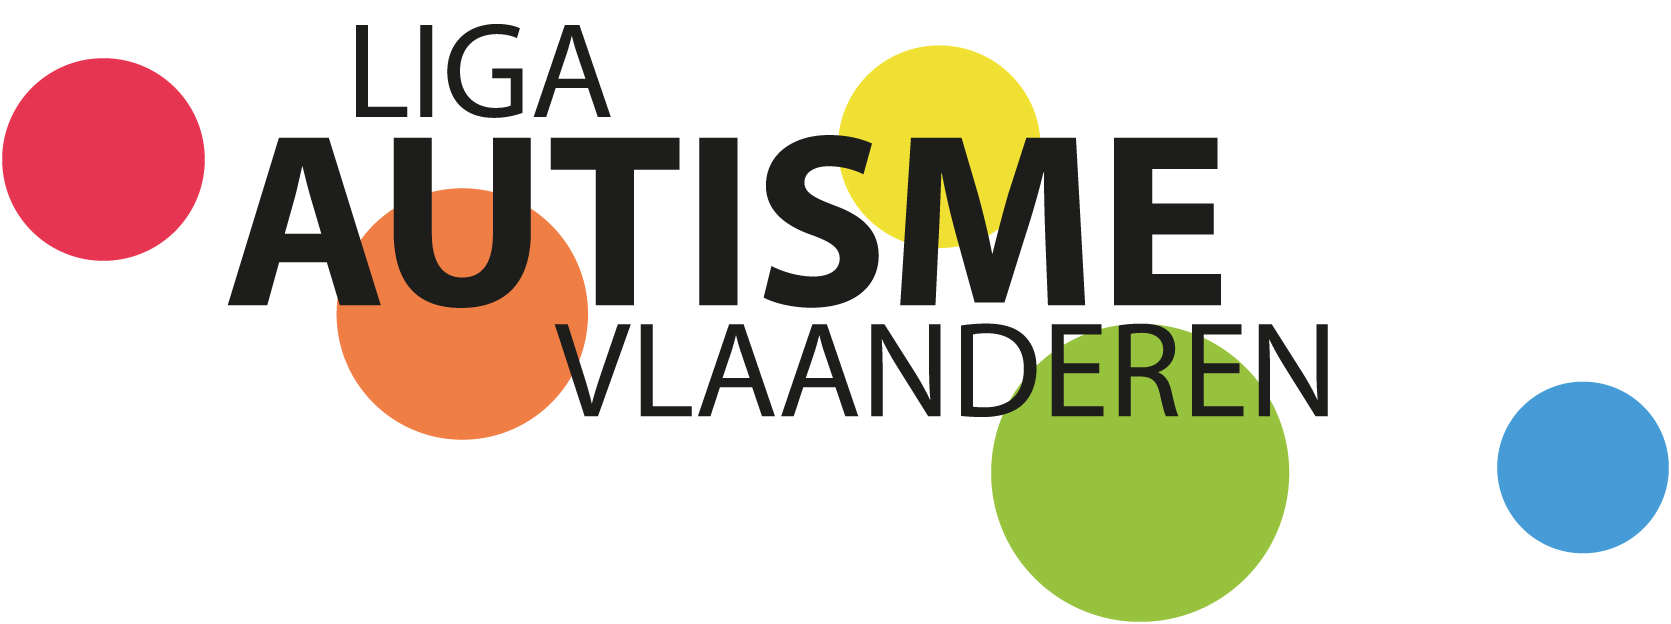 Liga Autisma Vlaanderen